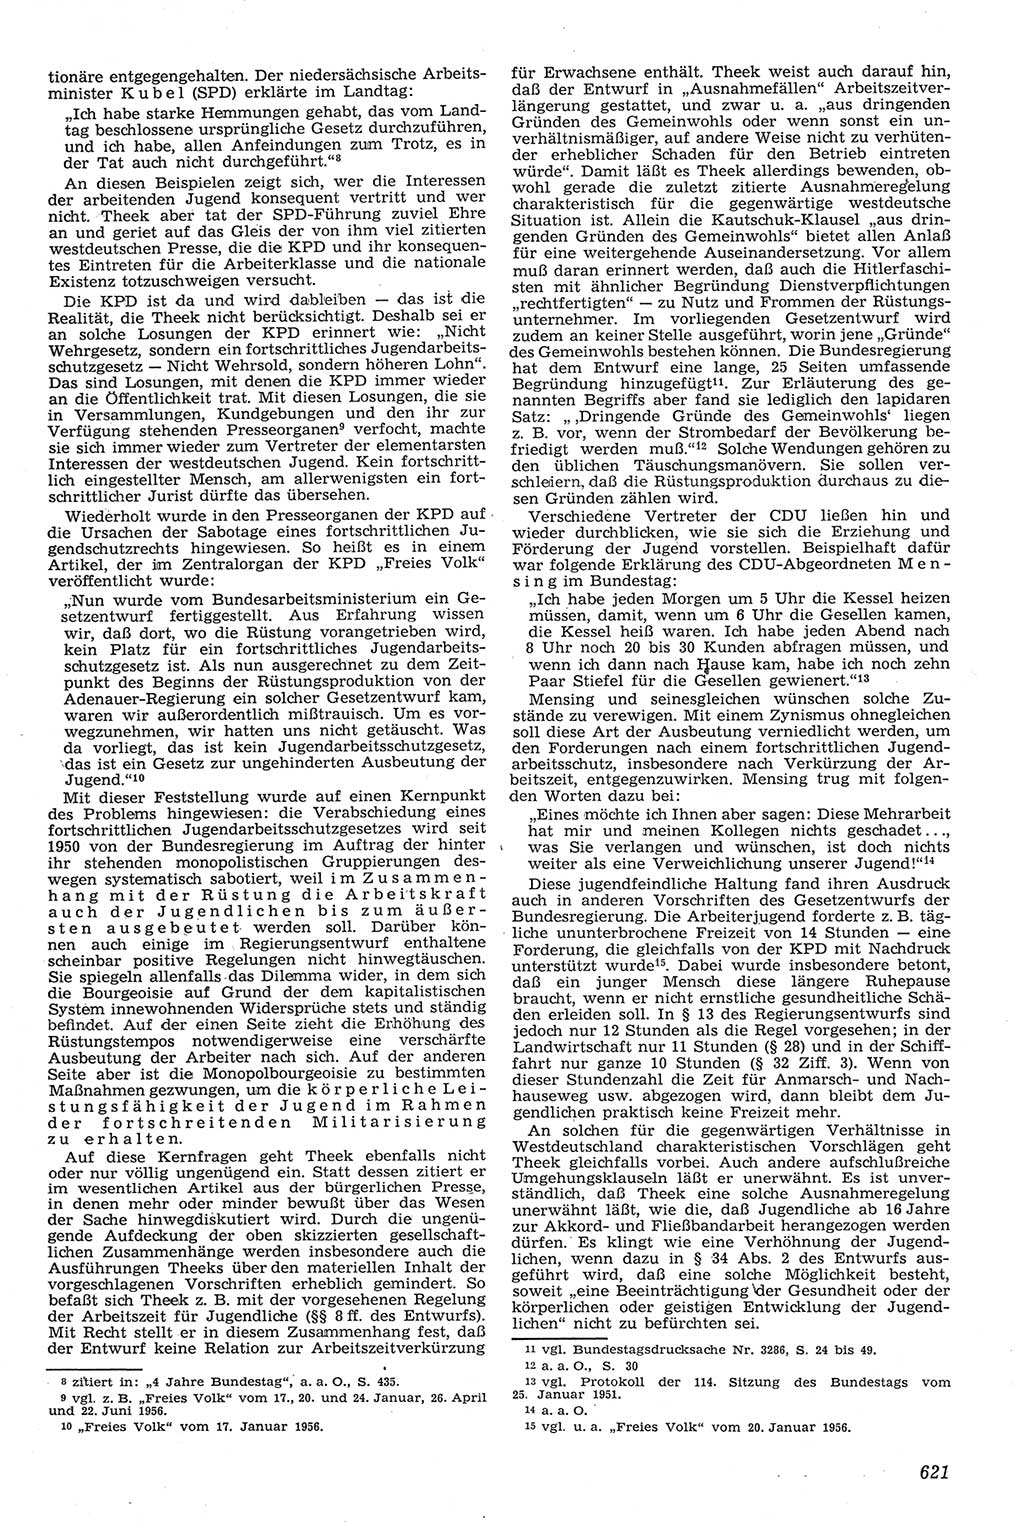 Neue Justiz (NJ), Zeitschrift für Recht und Rechtswissenschaft [Deutsche Demokratische Republik (DDR)], 11. Jahrgang 1957, Seite 621 (NJ DDR 1957, S. 621)